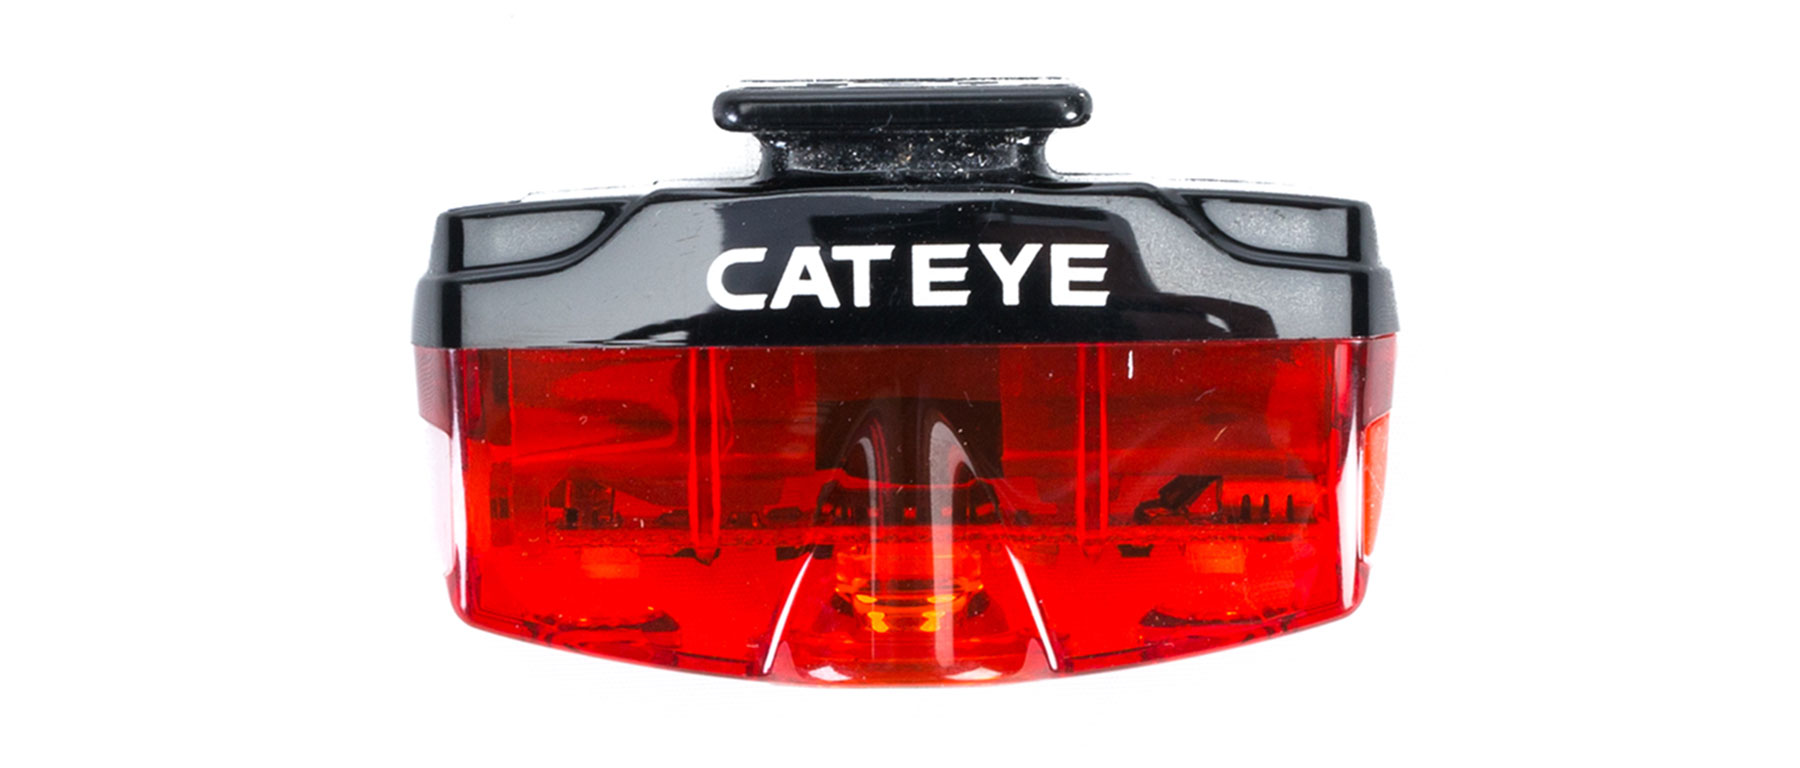 CatEye Rapid Mini Tail Light